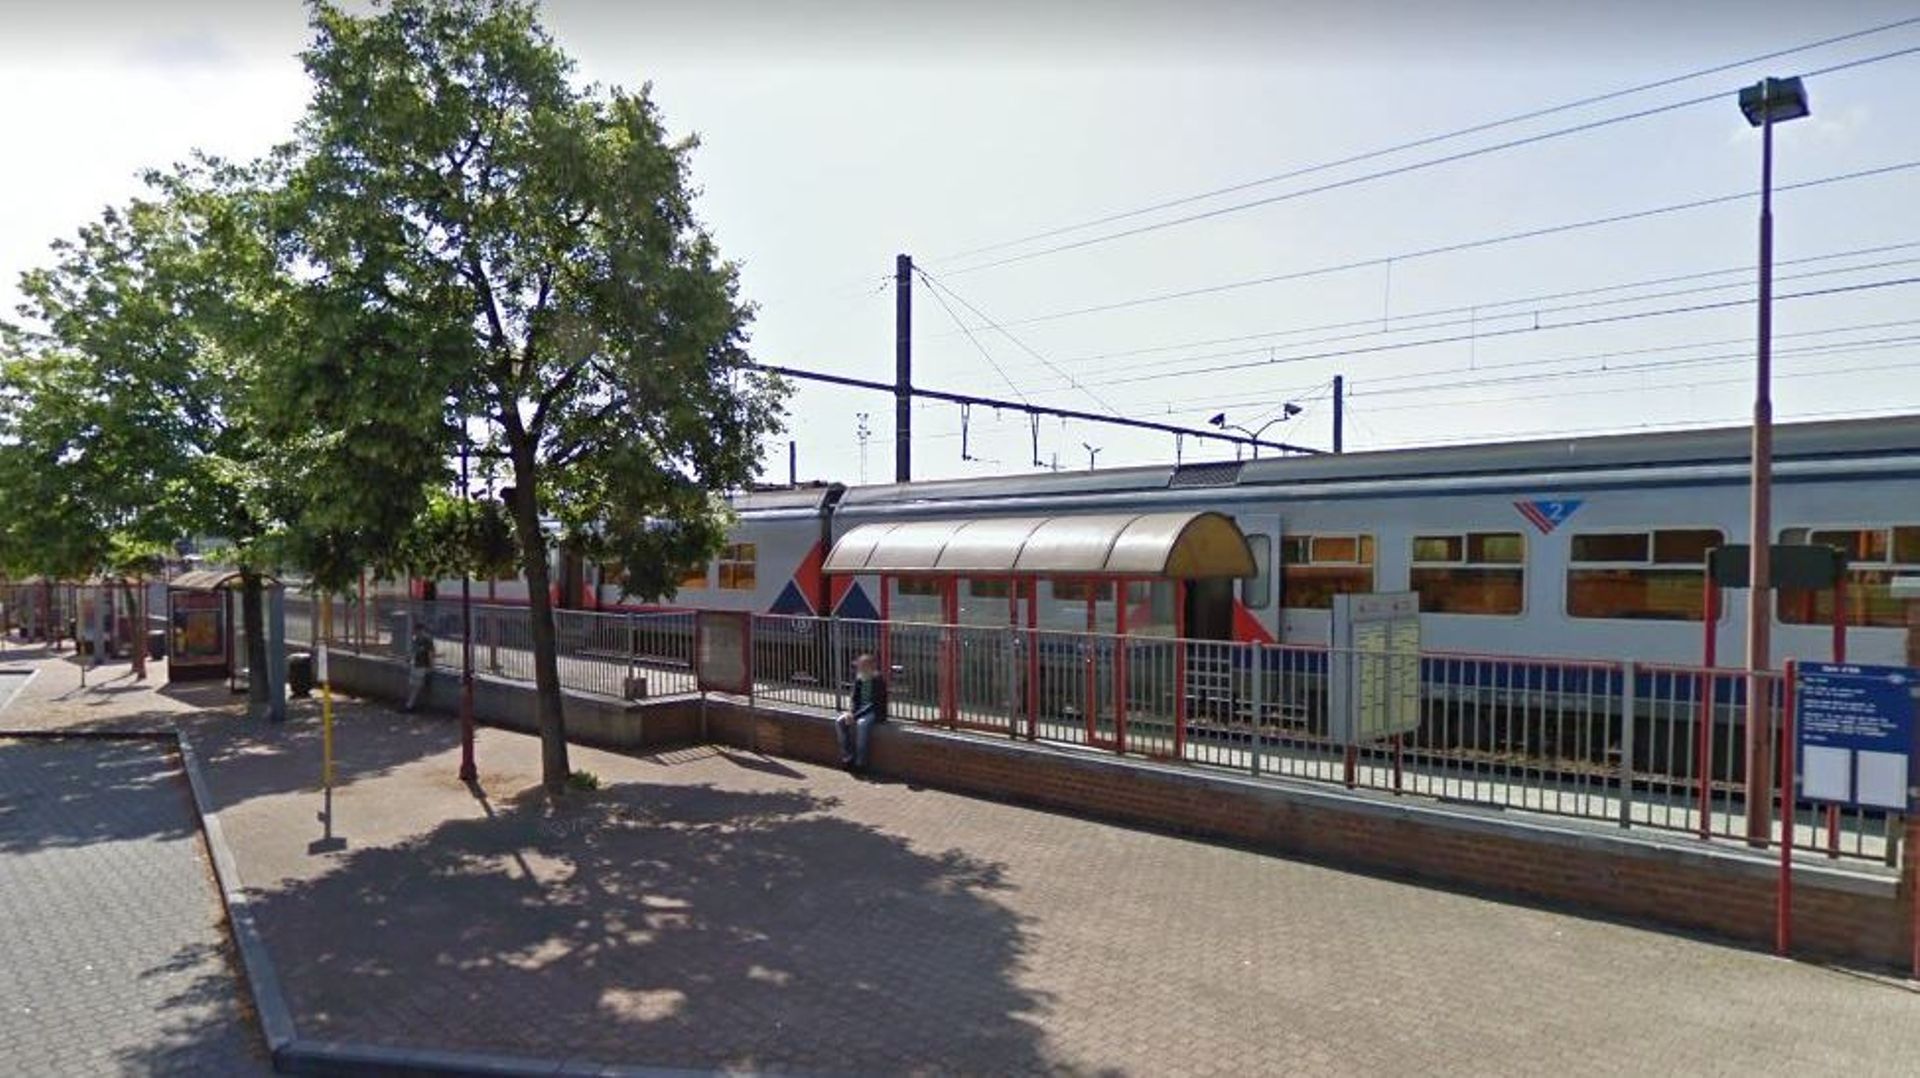 La circulation ferroviaire est interrompue entre Tournai et Ath dans les deux sens, a indiqué la SNCB mardi vers 17h00